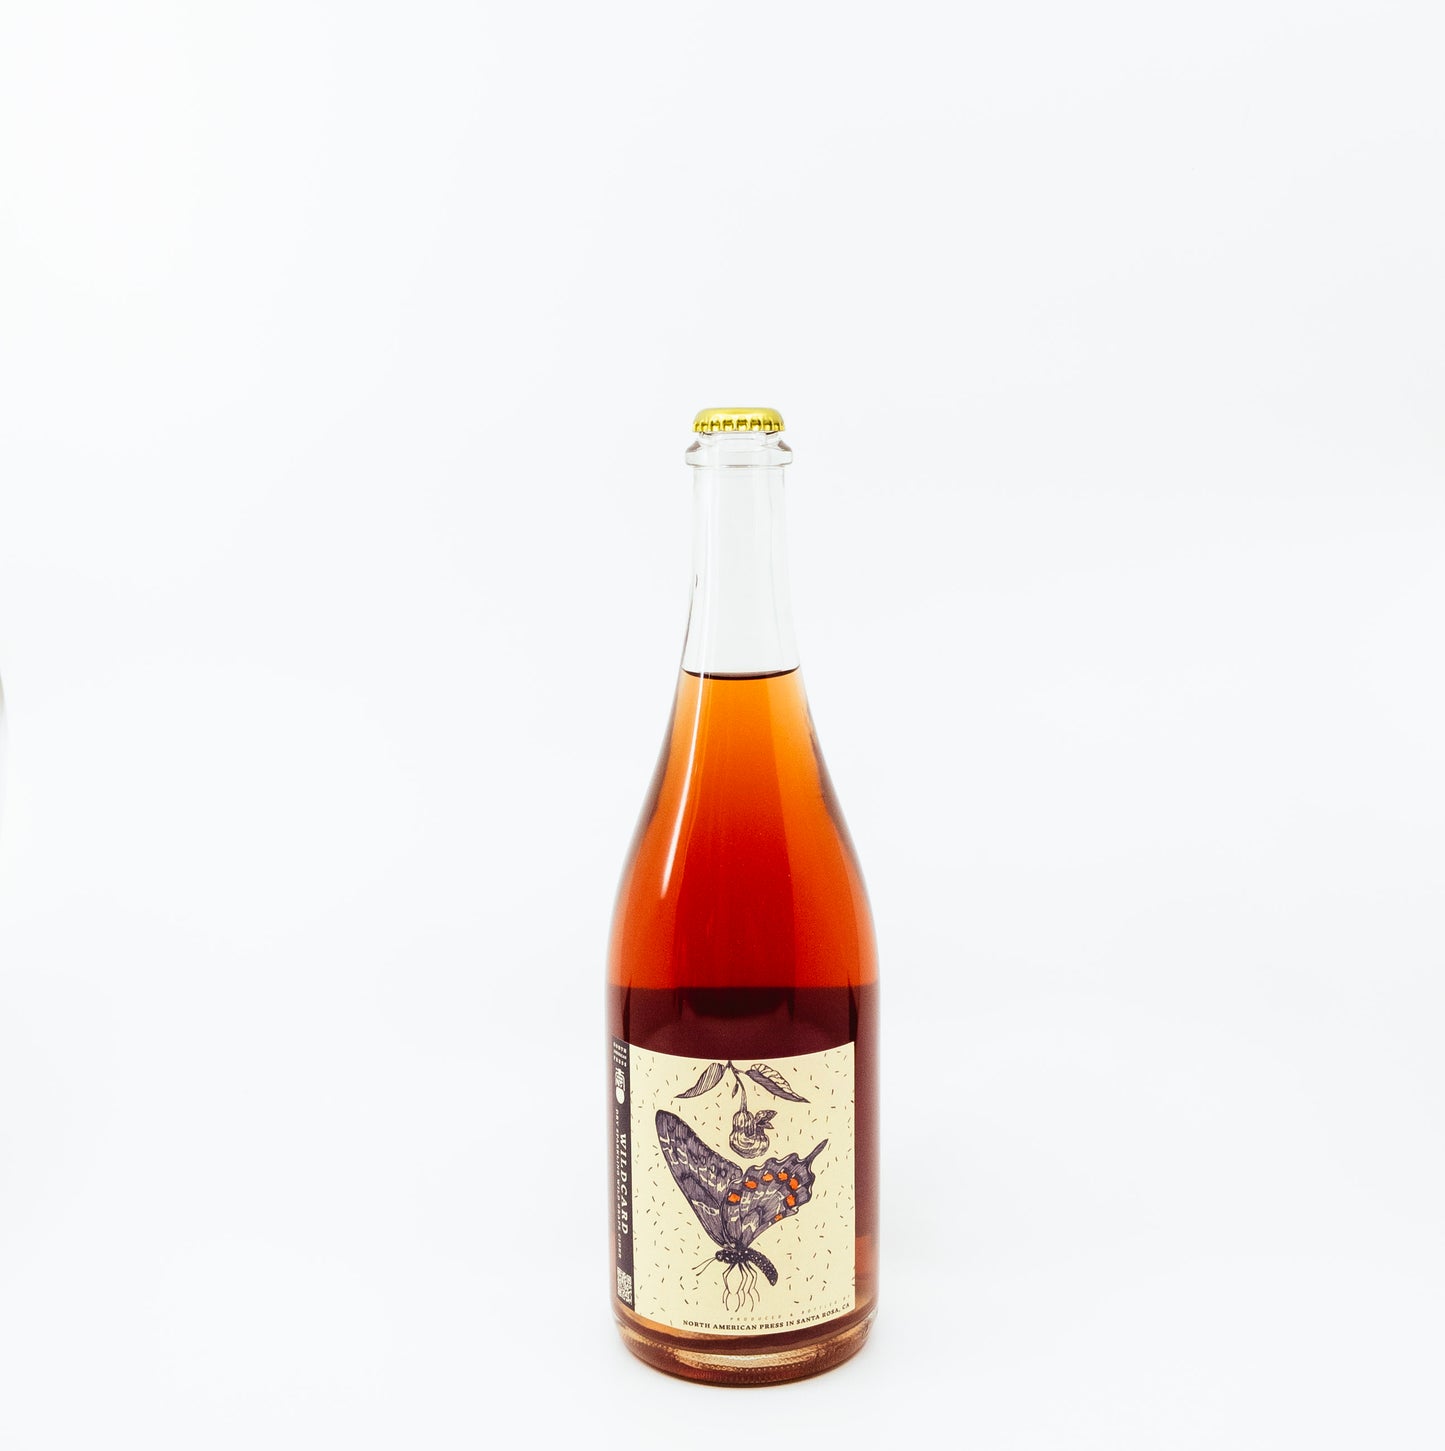 North American Press "Wildcard" Sonoma Grape Cider (2021) [750ml]